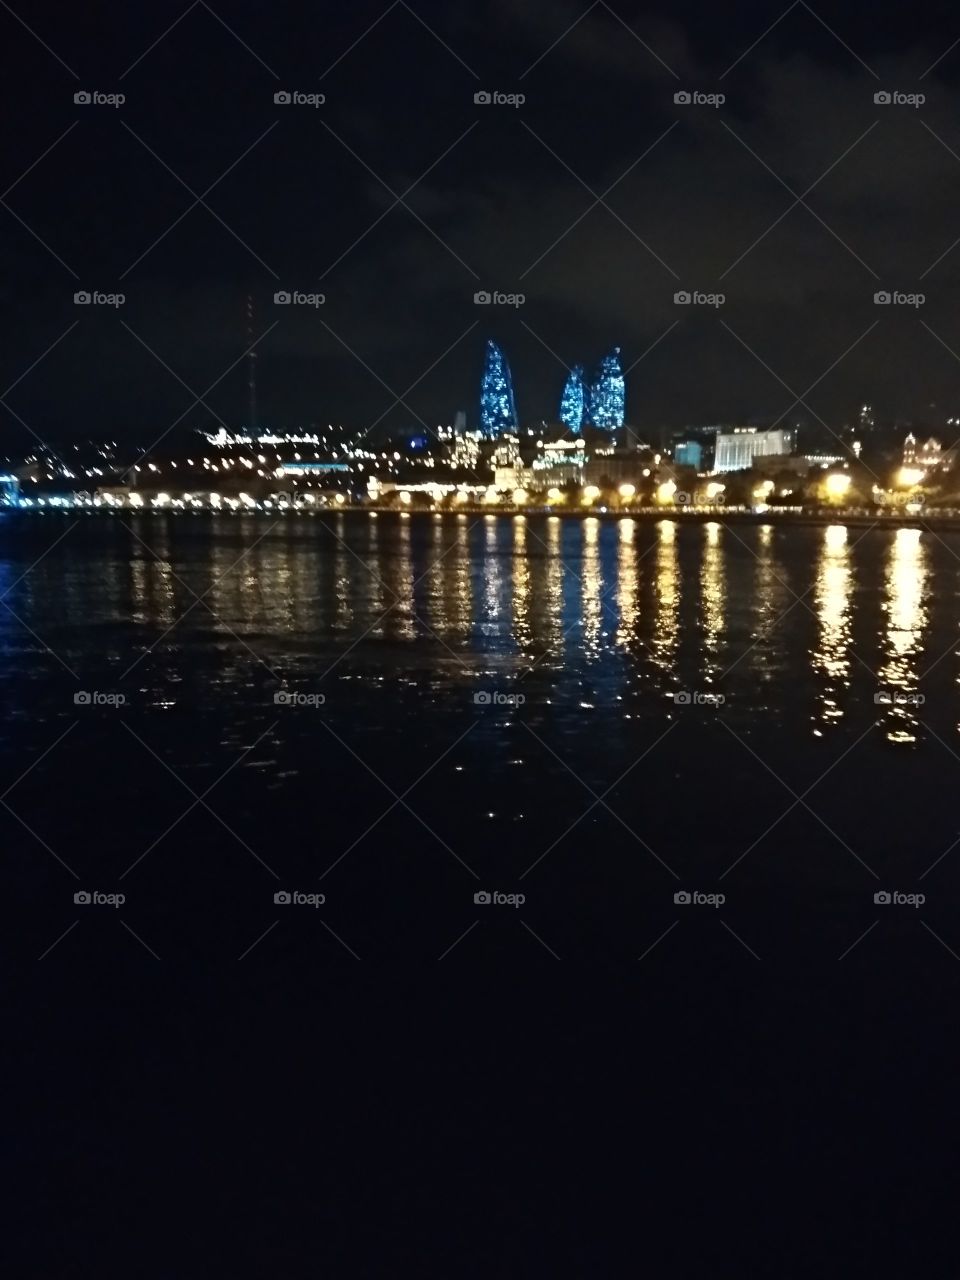 caspian sea Baku Azerbaijan republic night